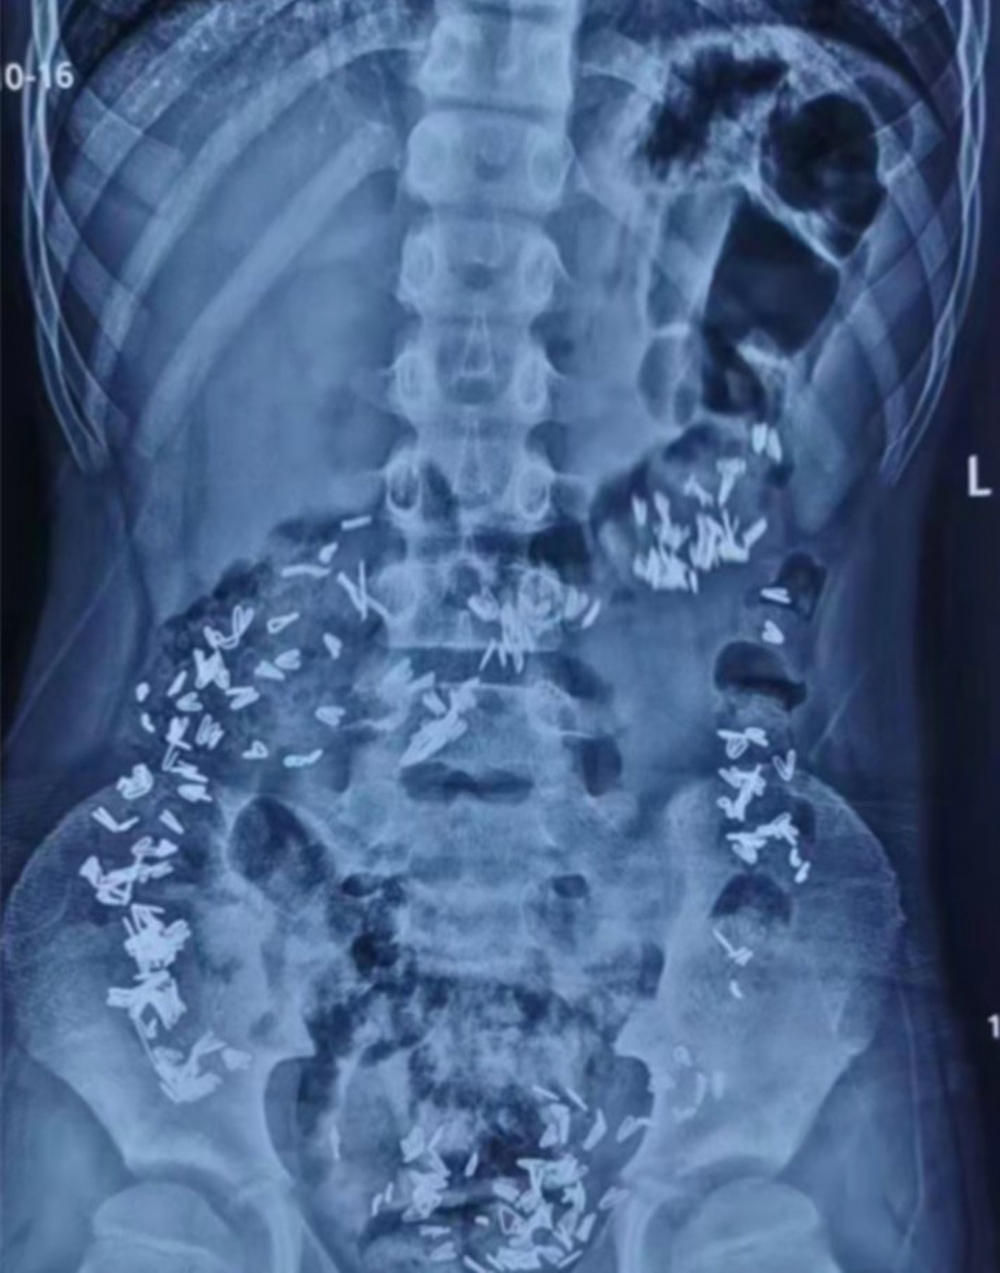 男童的X光照片嚇壞醫生。